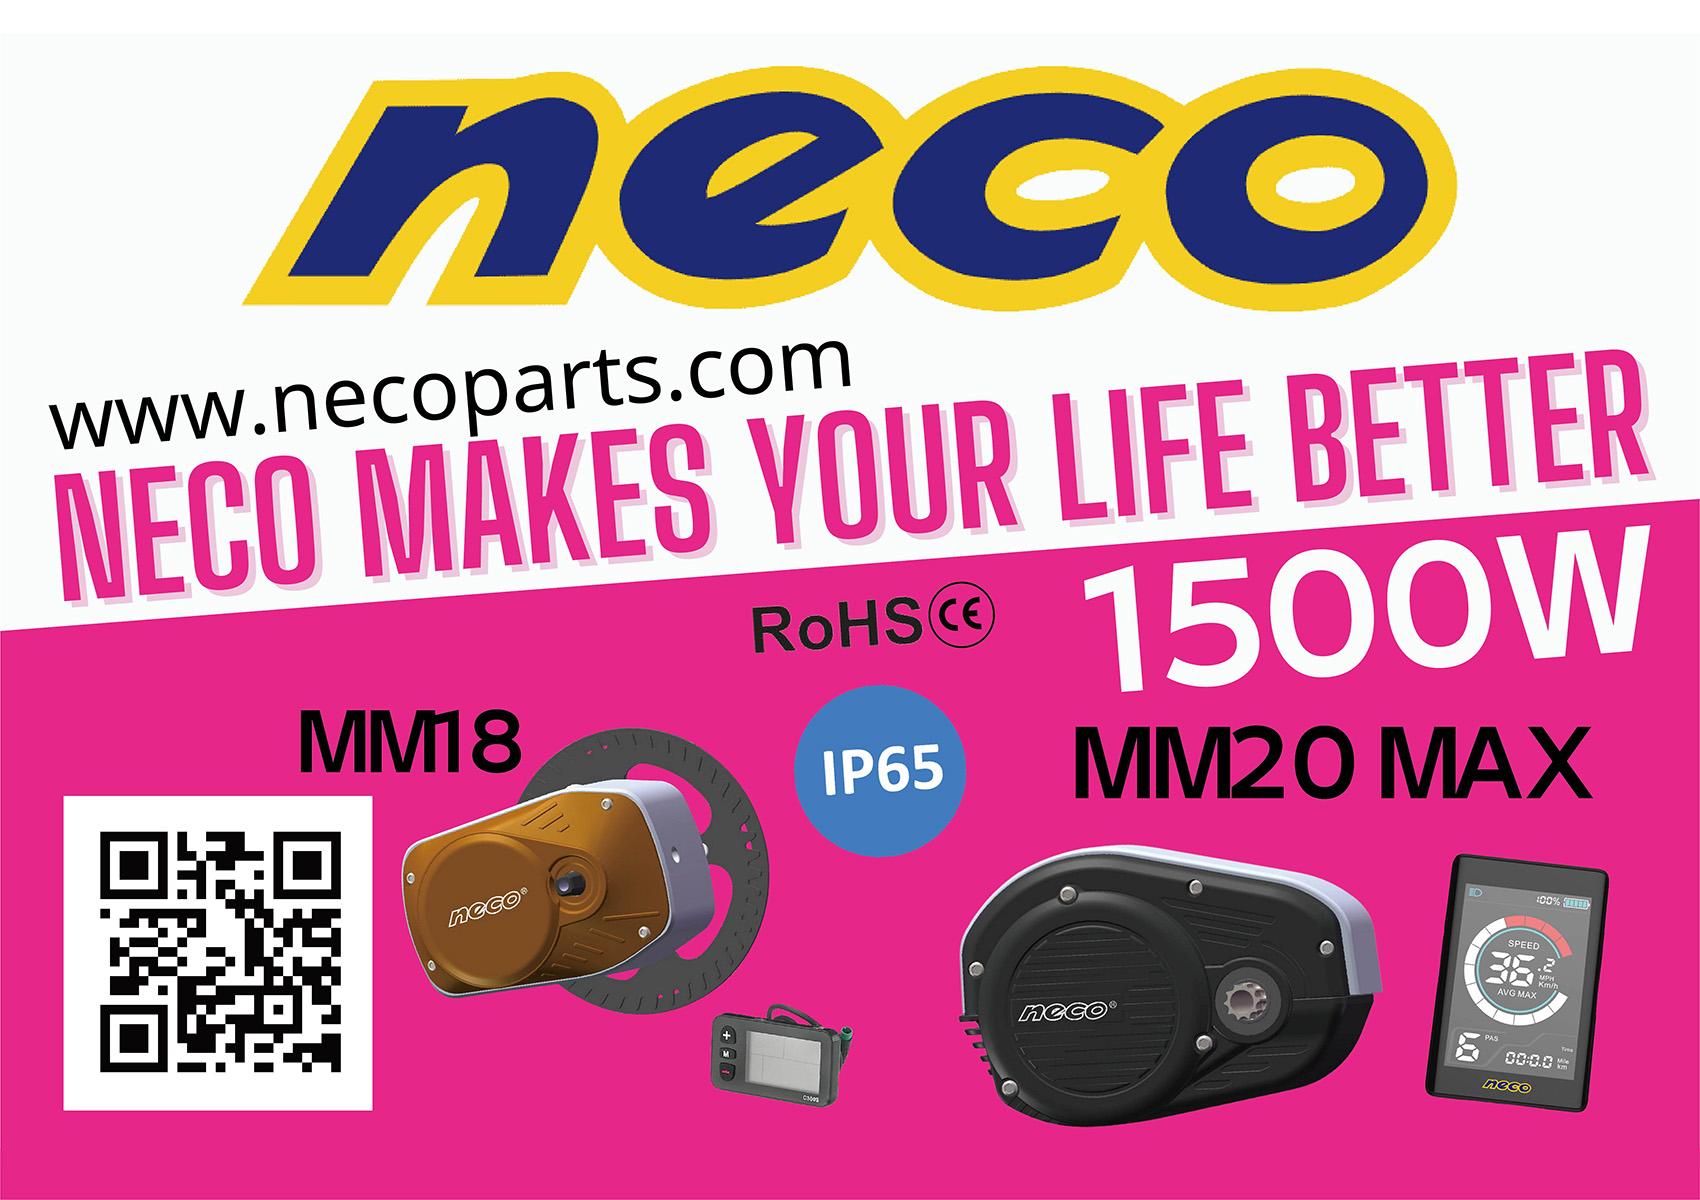  www.necoparts.com 